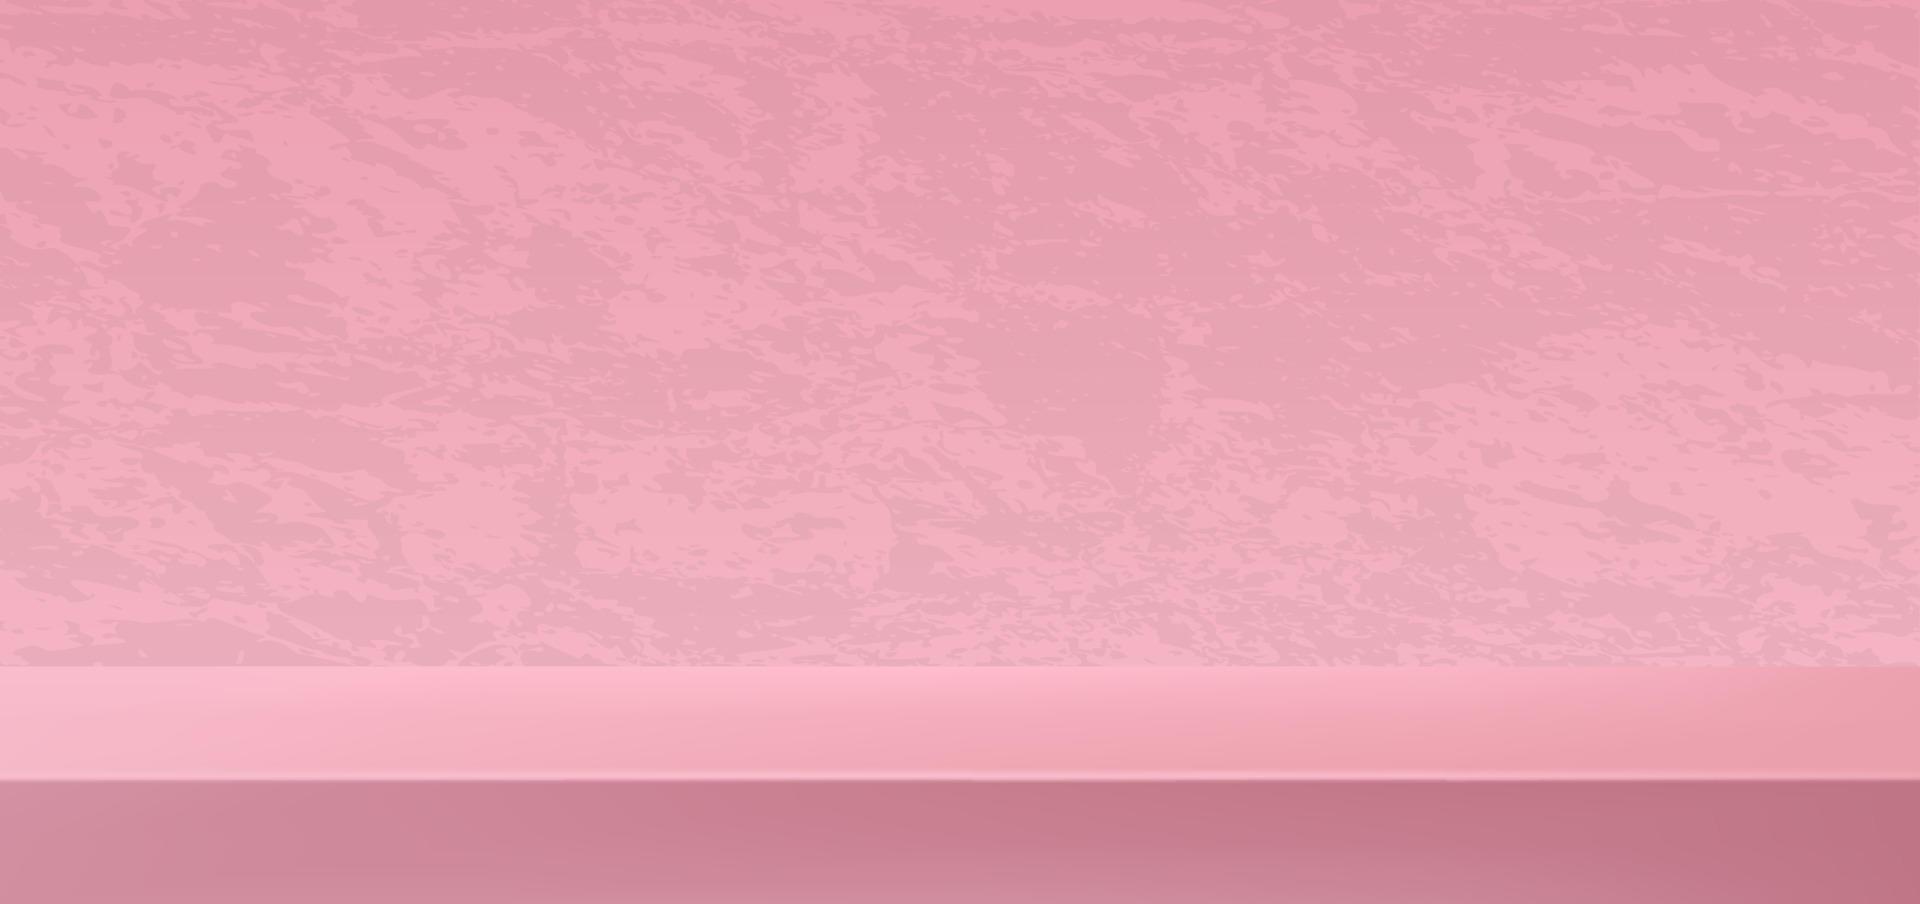 Concepto de vector de fondo de podio rosa 3d, adecuado para el diseño de fondo romántico, plantilla, banner de San Valentín